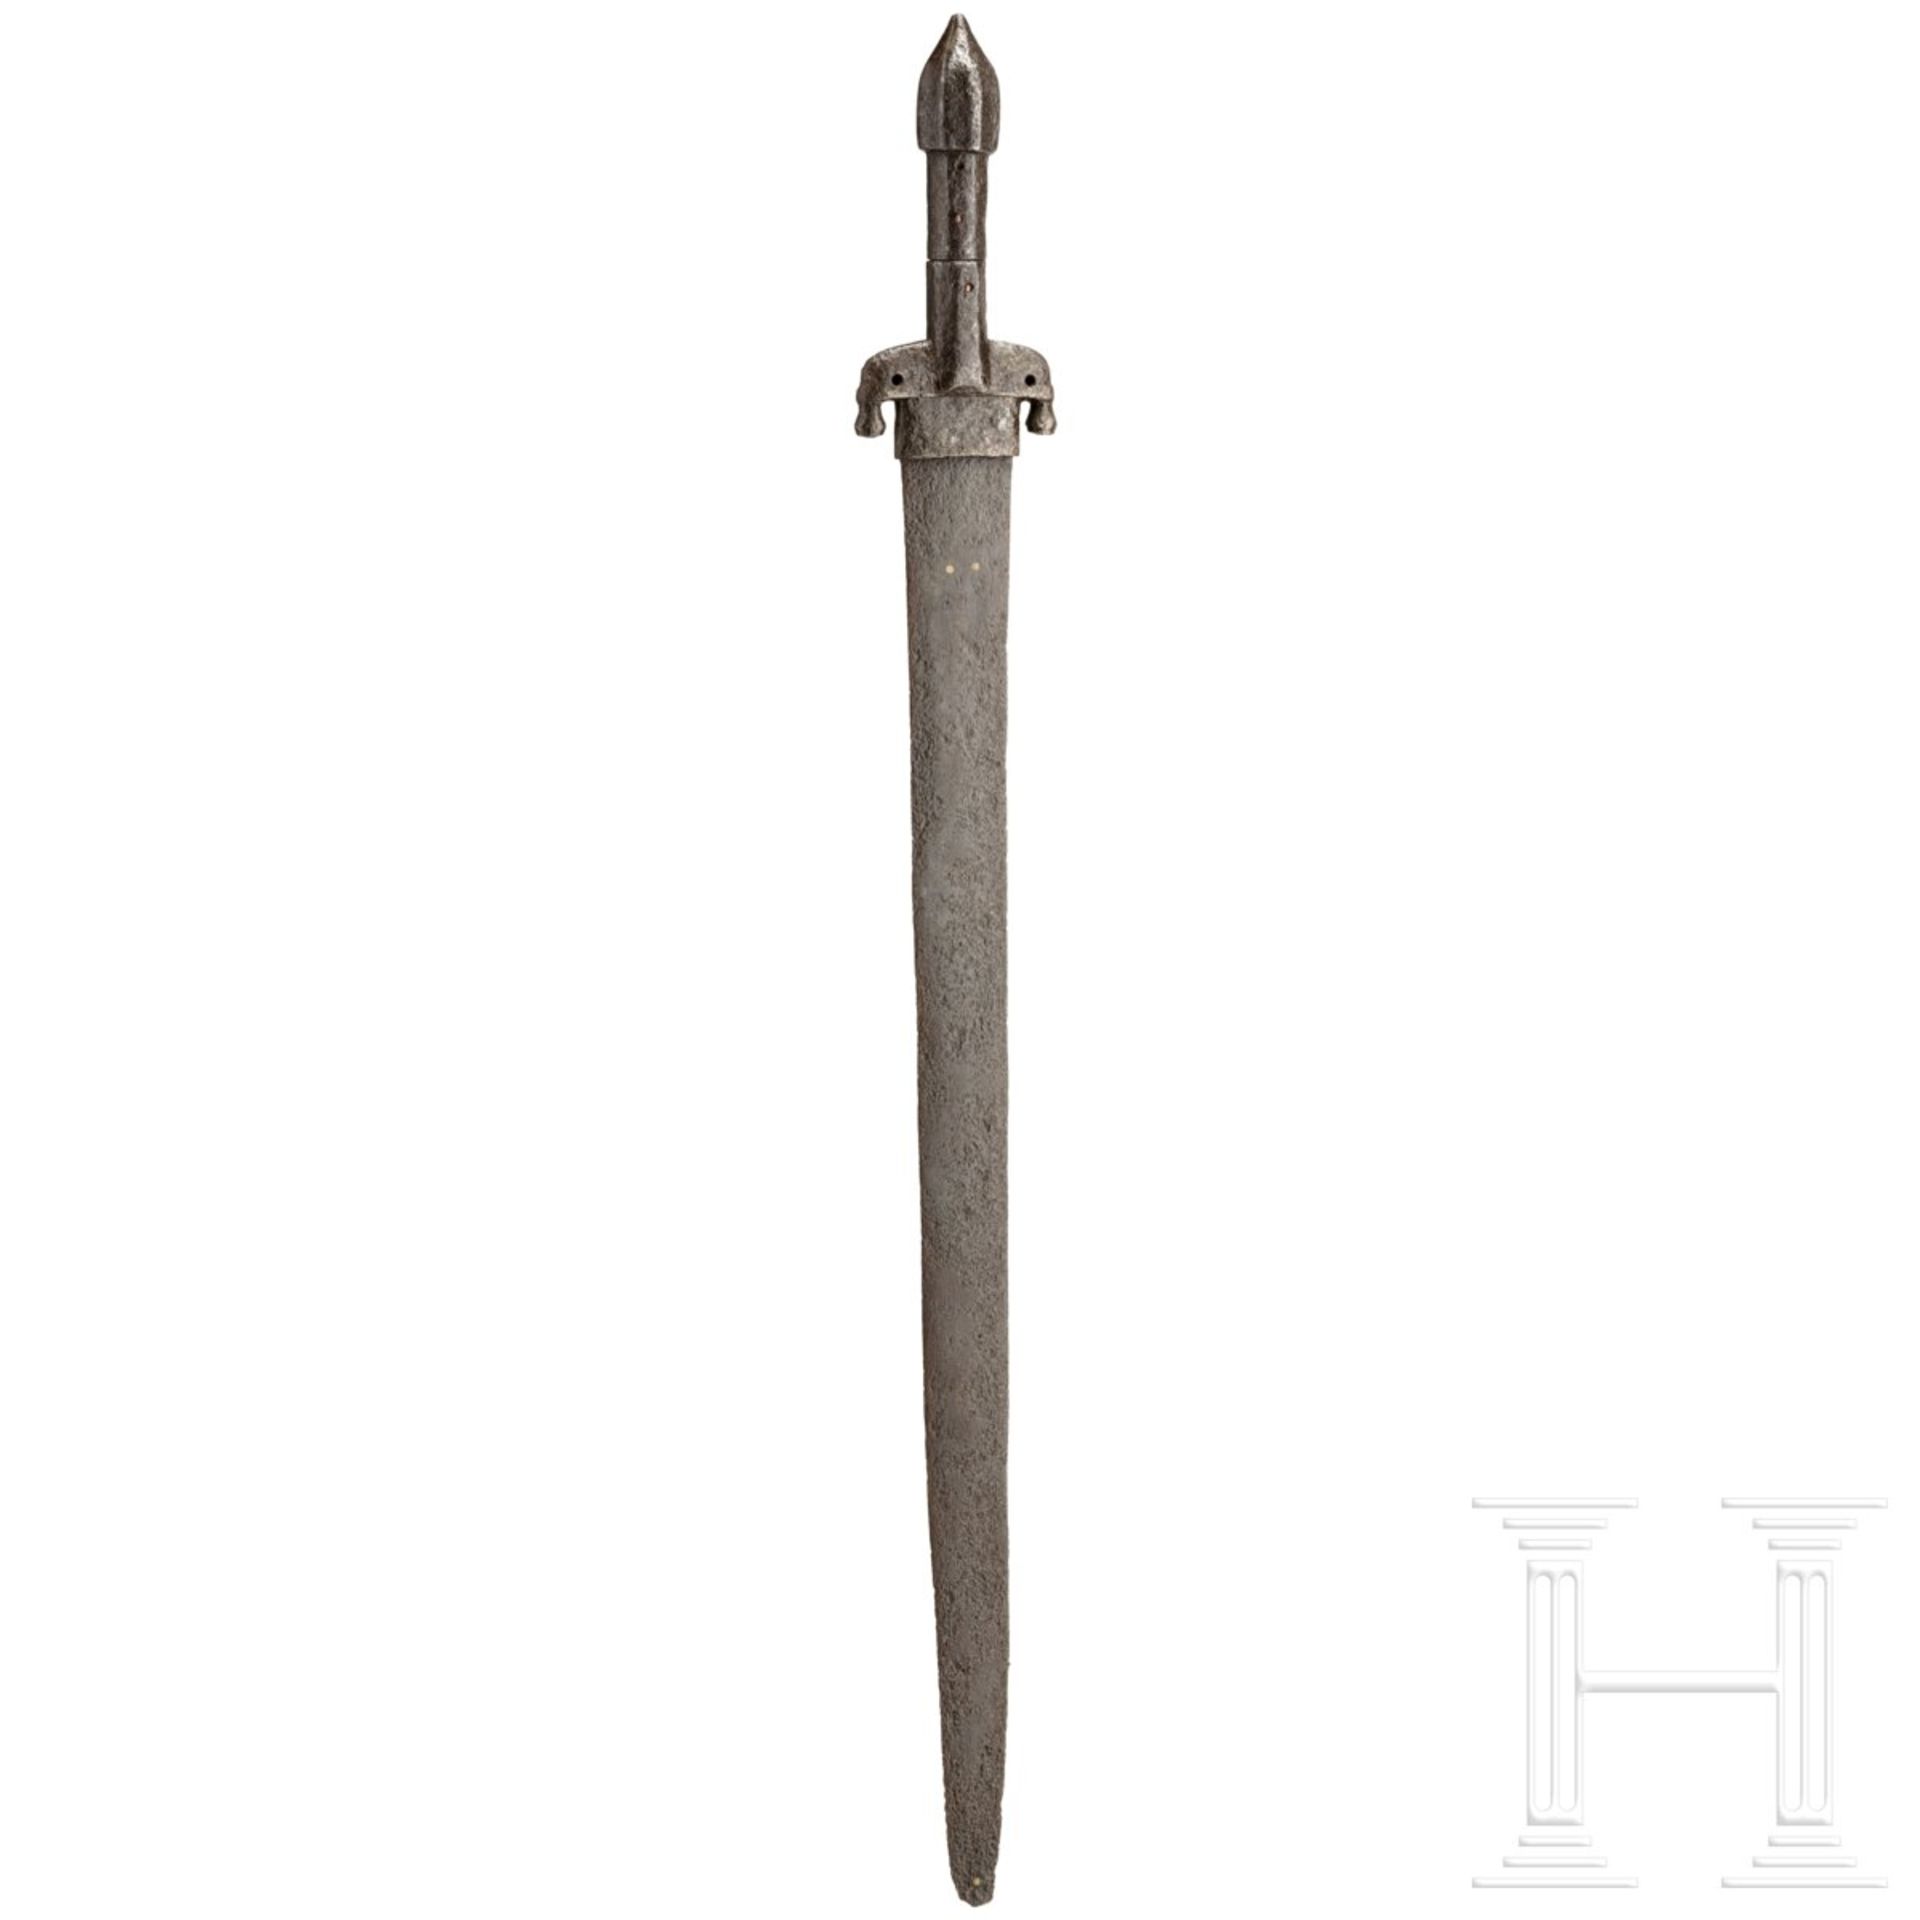 Mamelukisches Schwert, Oman, 17. Jhdt. - Image 2 of 6